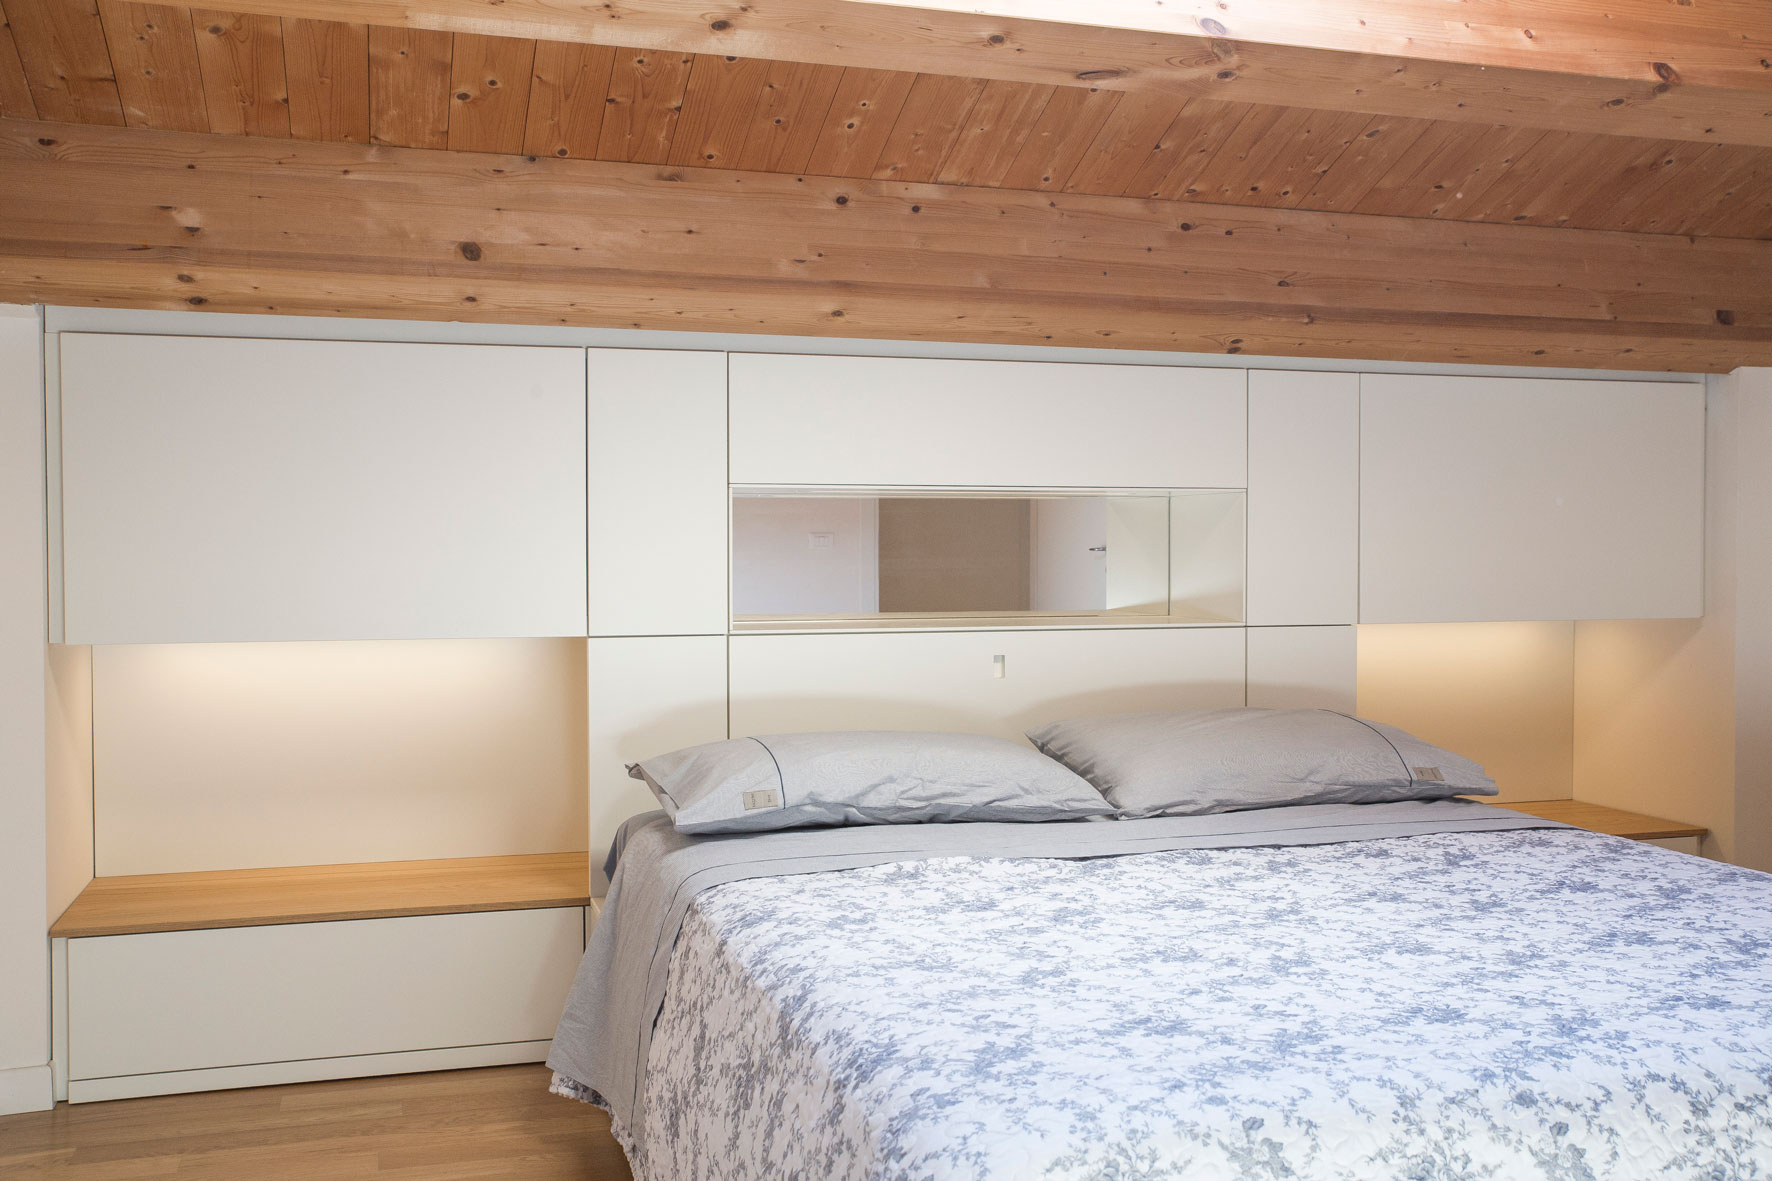 Camera da letto moderna, su misura - Paolo Russo